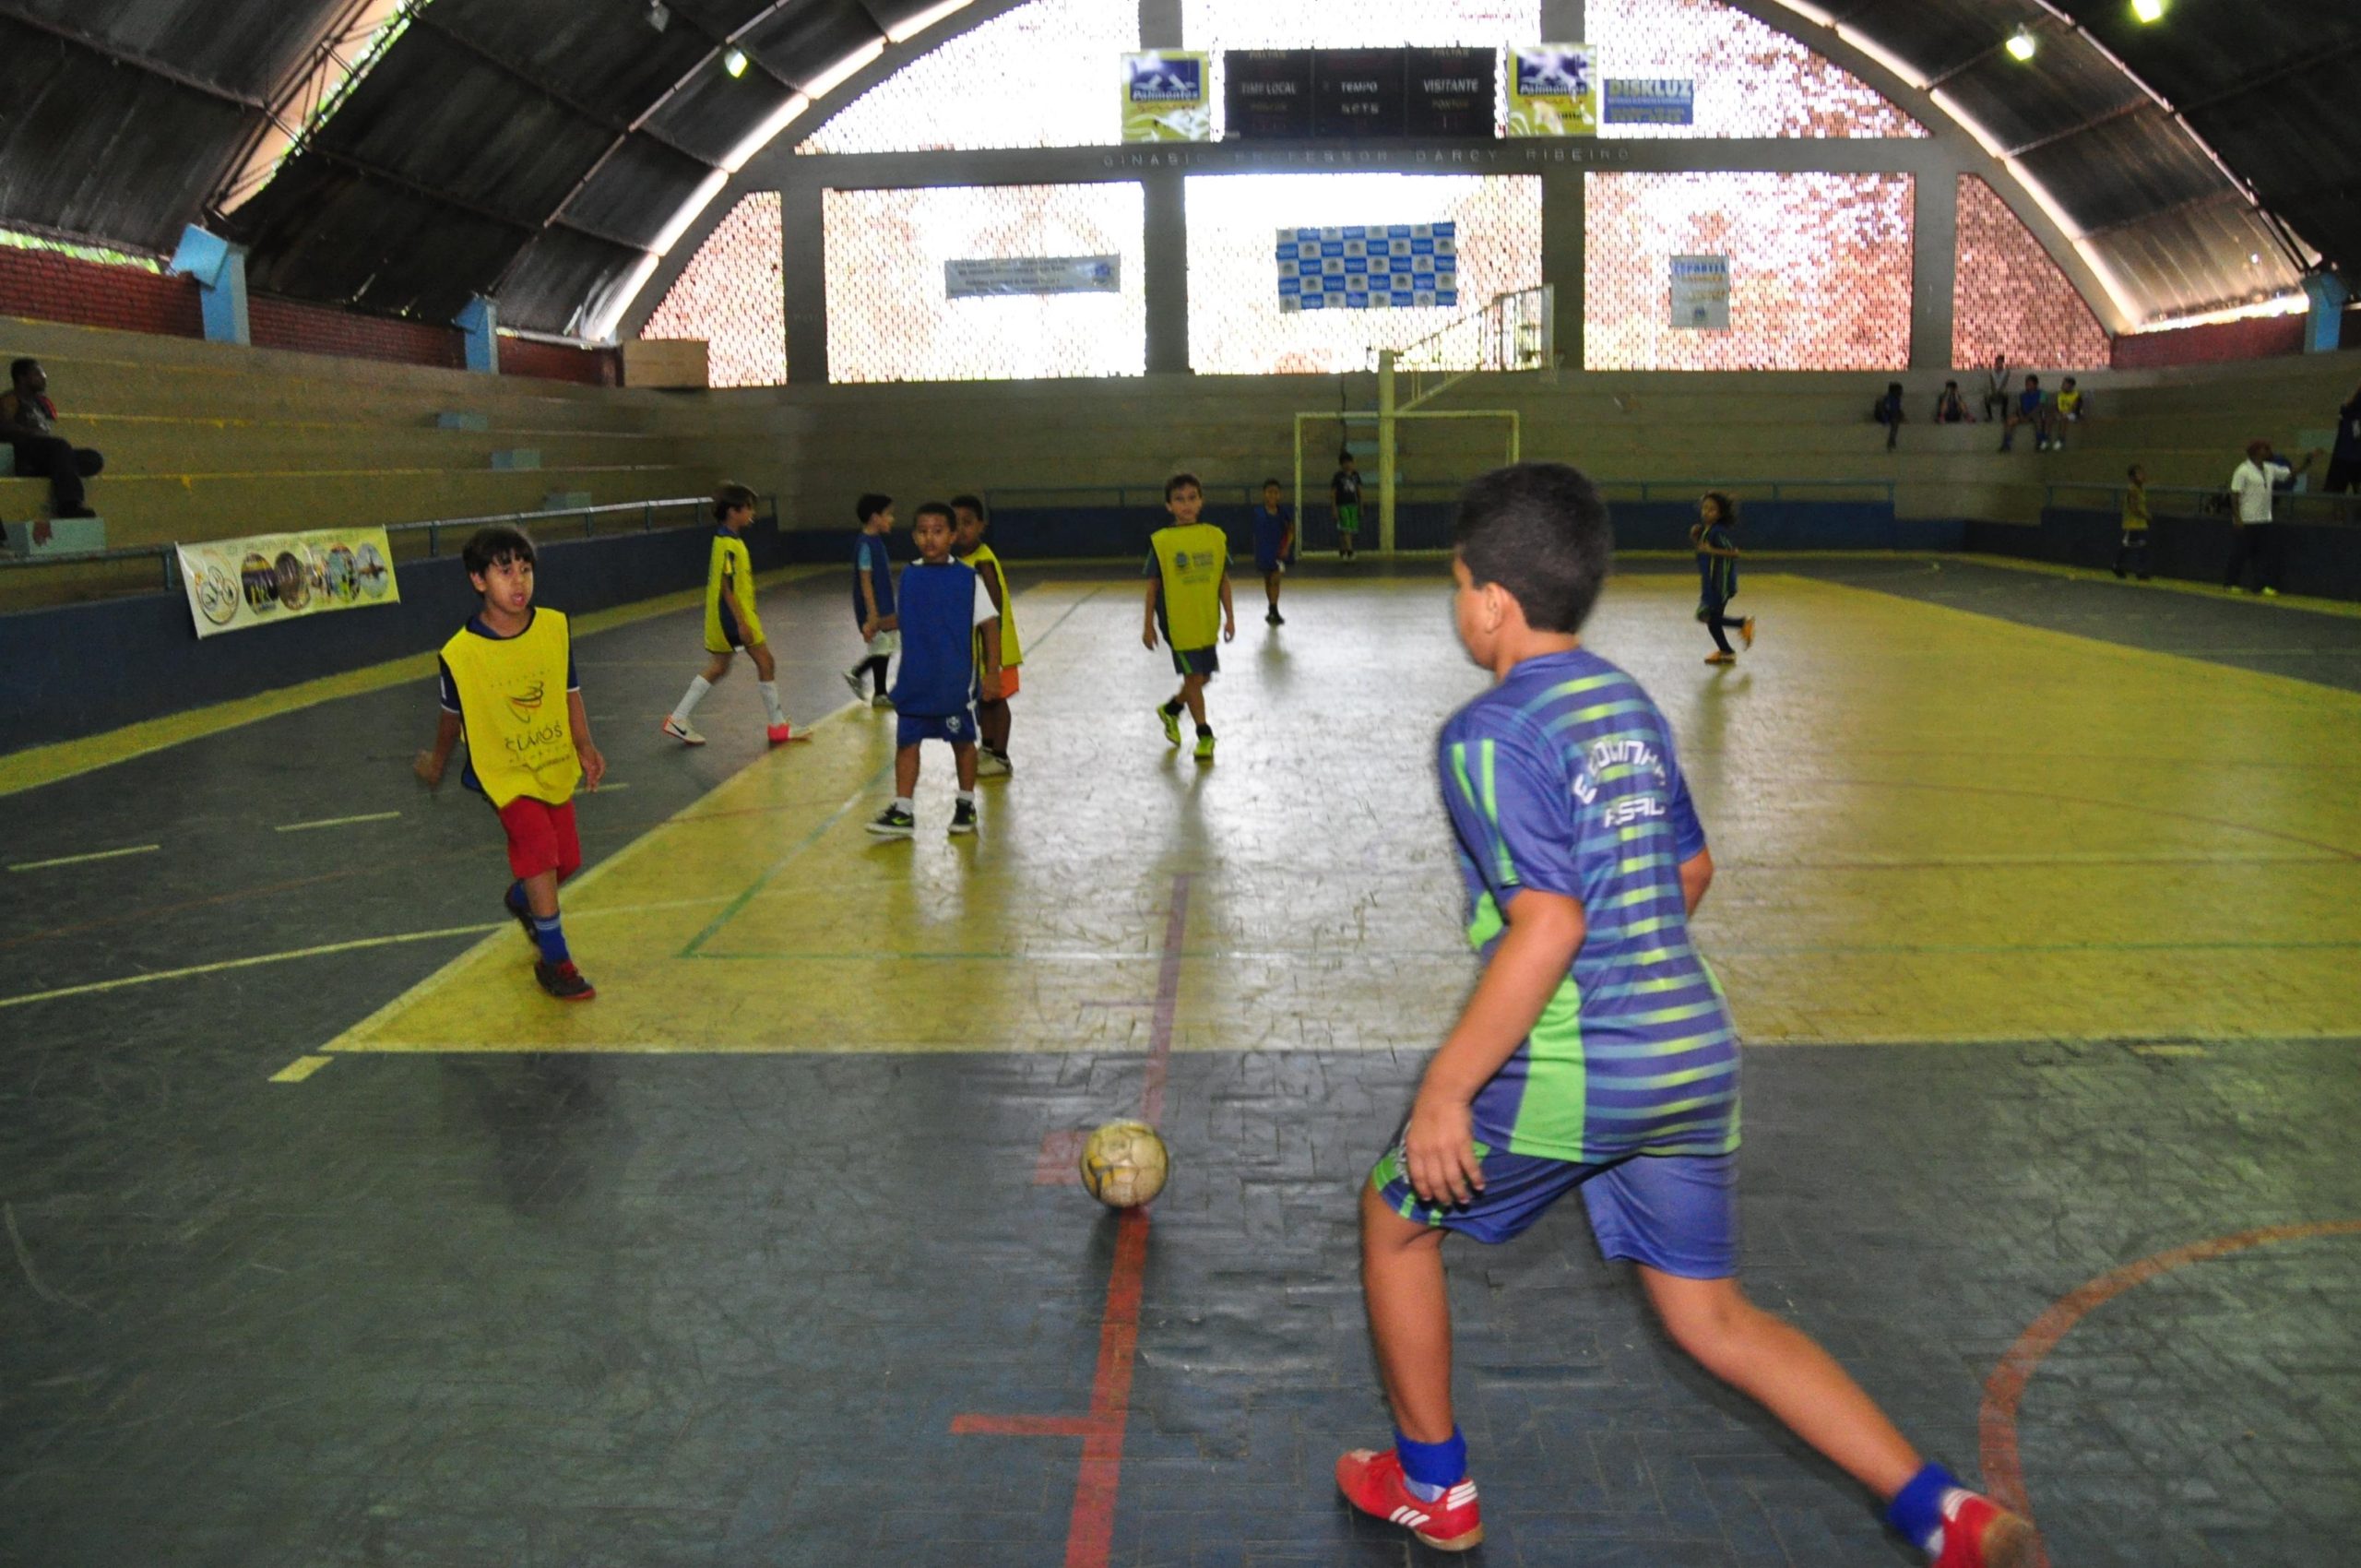 Moc realizará seletiva municipal dos Jogos Escolares de Minas Gerais (JEMG)